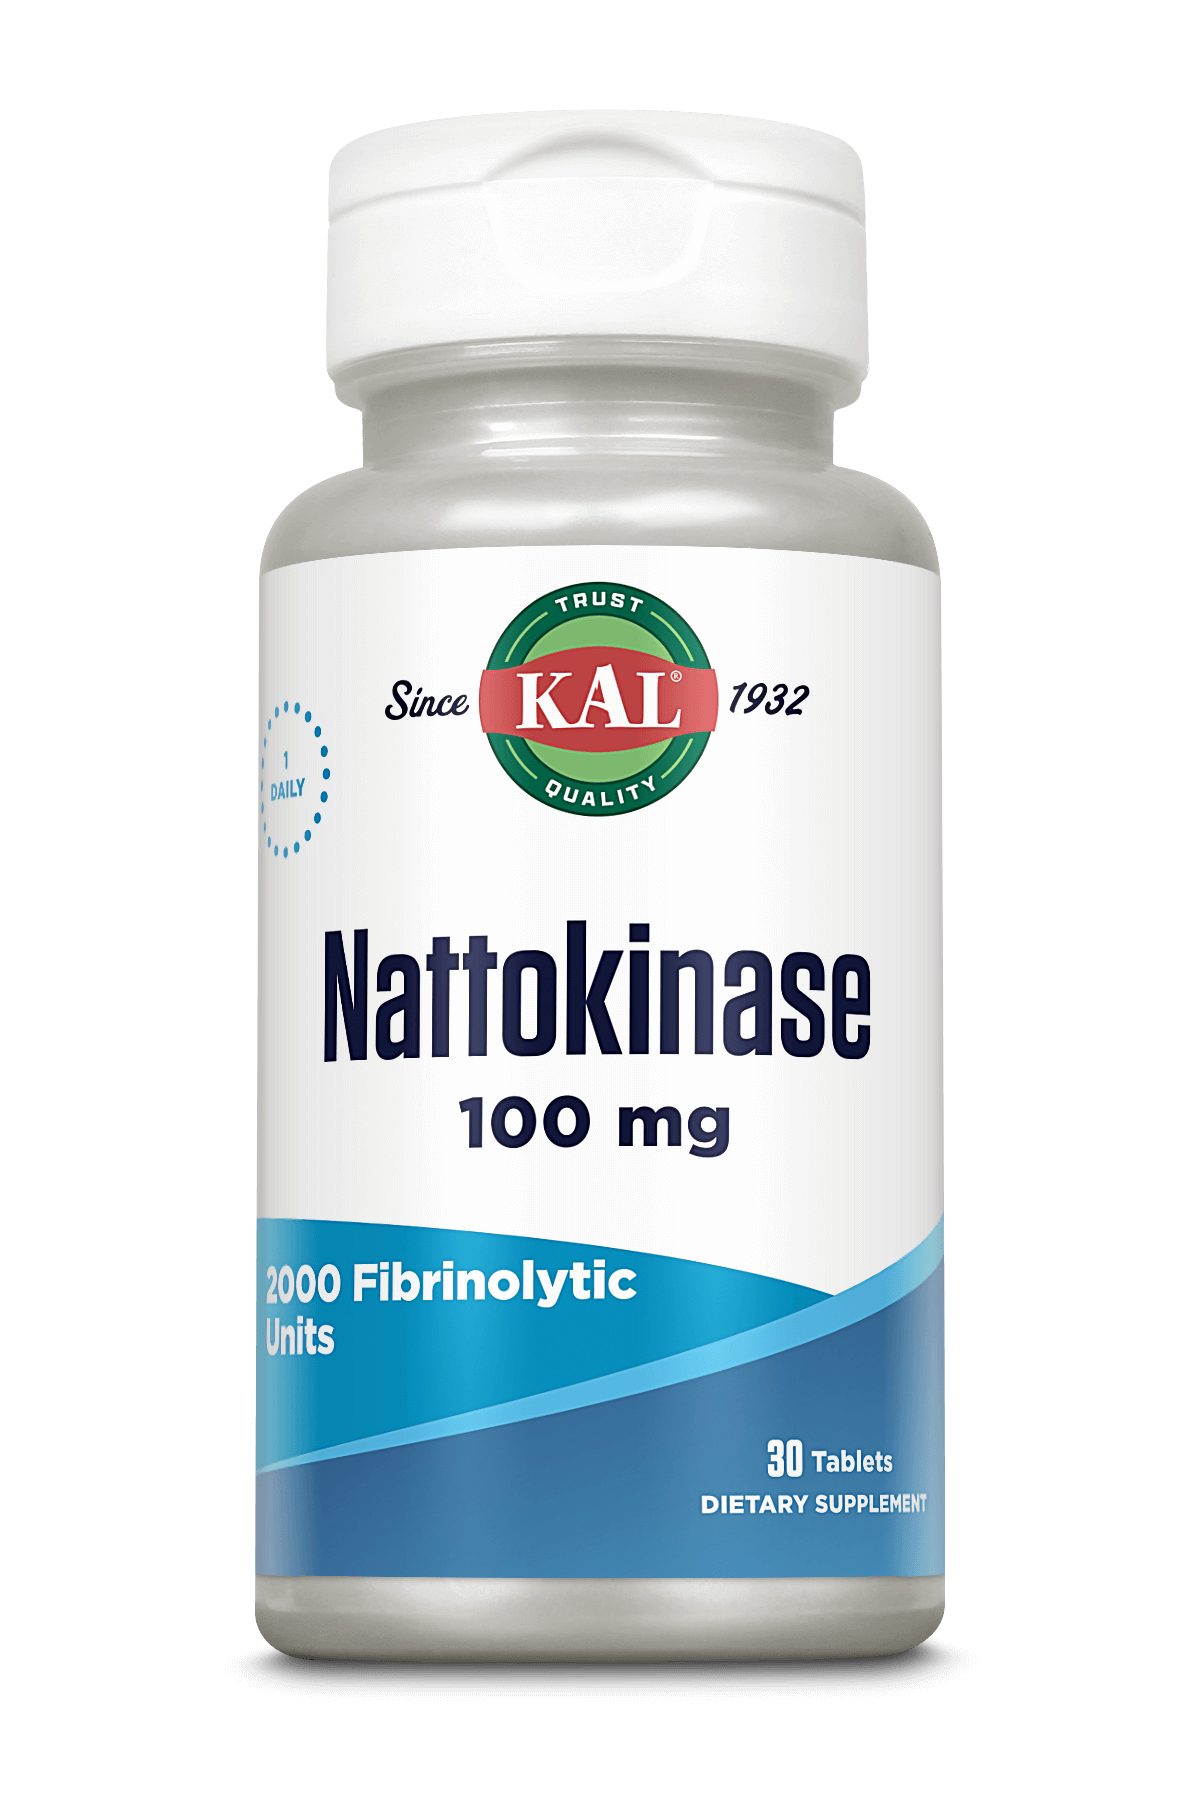 Nattokinase Tablets 100 mg